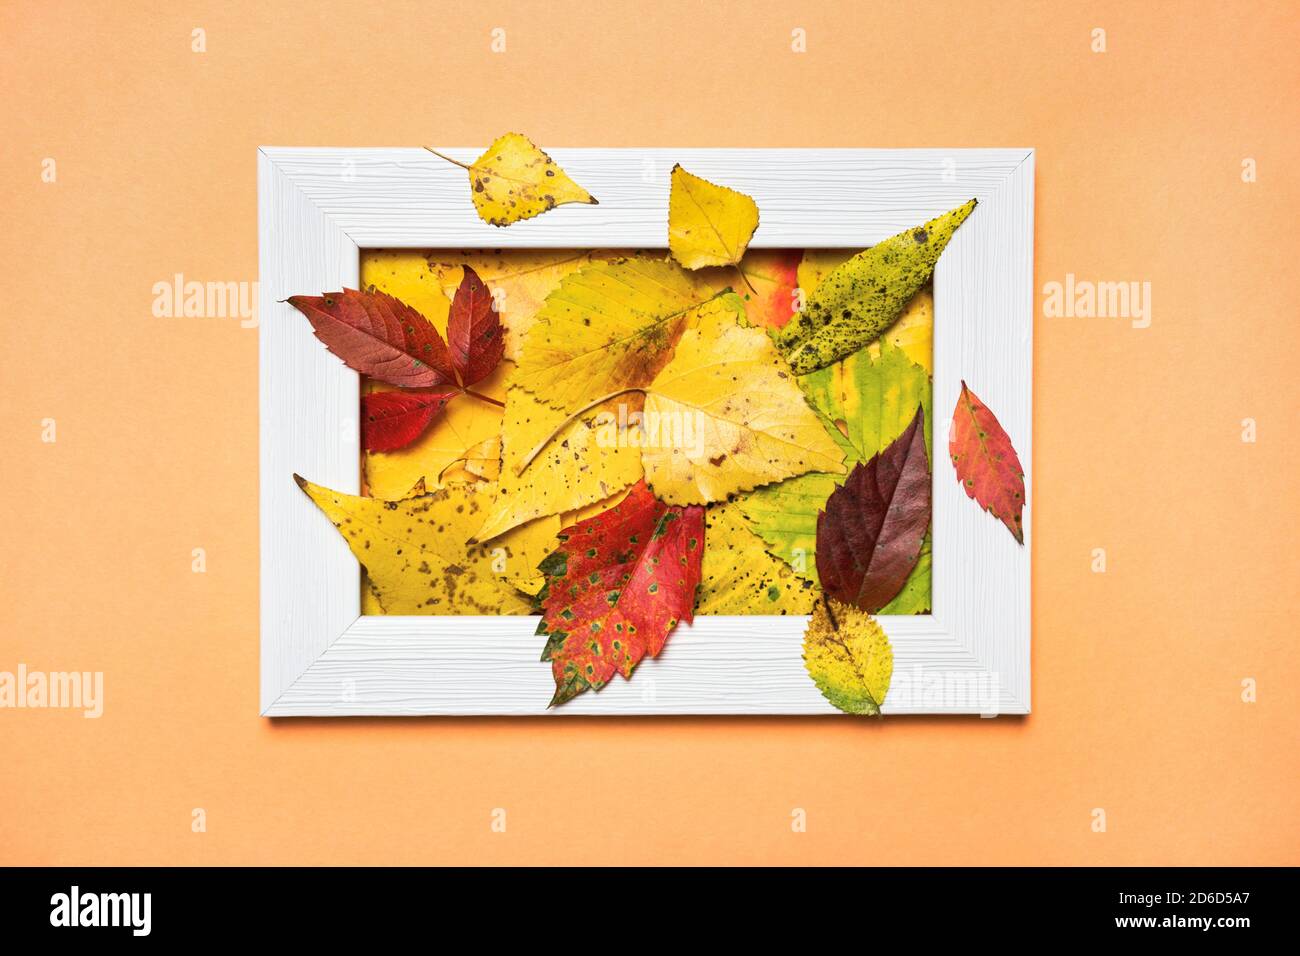 Mise en page créative composée de feuilles d'automne colorées et d'un cadre photo vide. Pose à plat. Concept de la nature. Banque D'Images